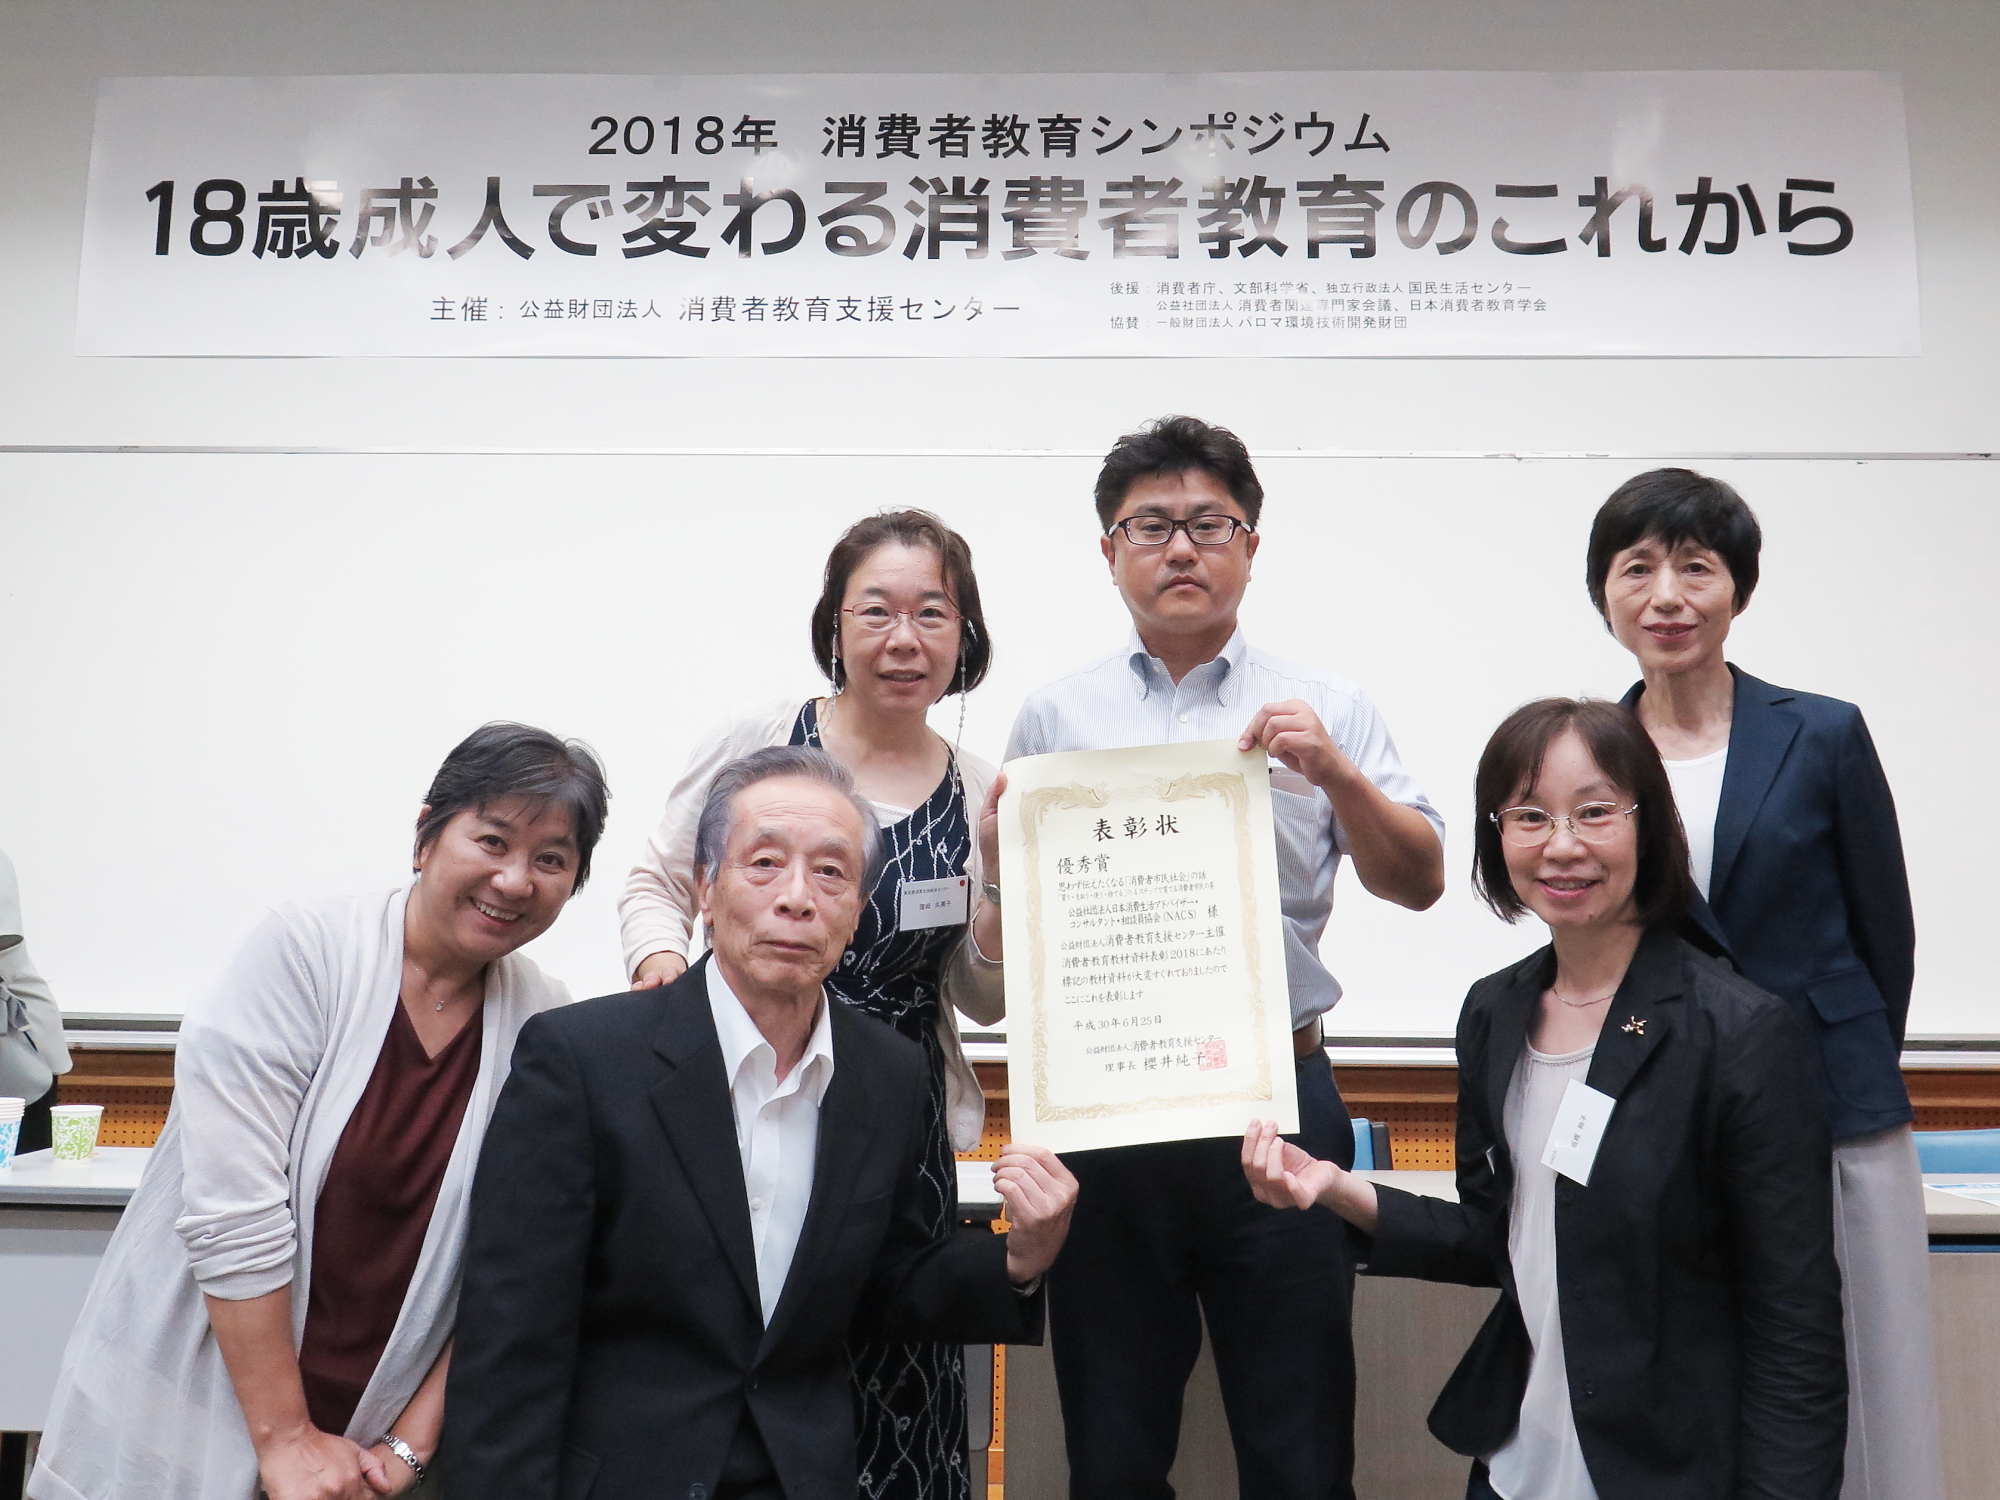 消費者教育支援センター資料表彰 授賞式の様子 nacs [公益社団法人 日本消費生活アドバイザー・コンサルタント